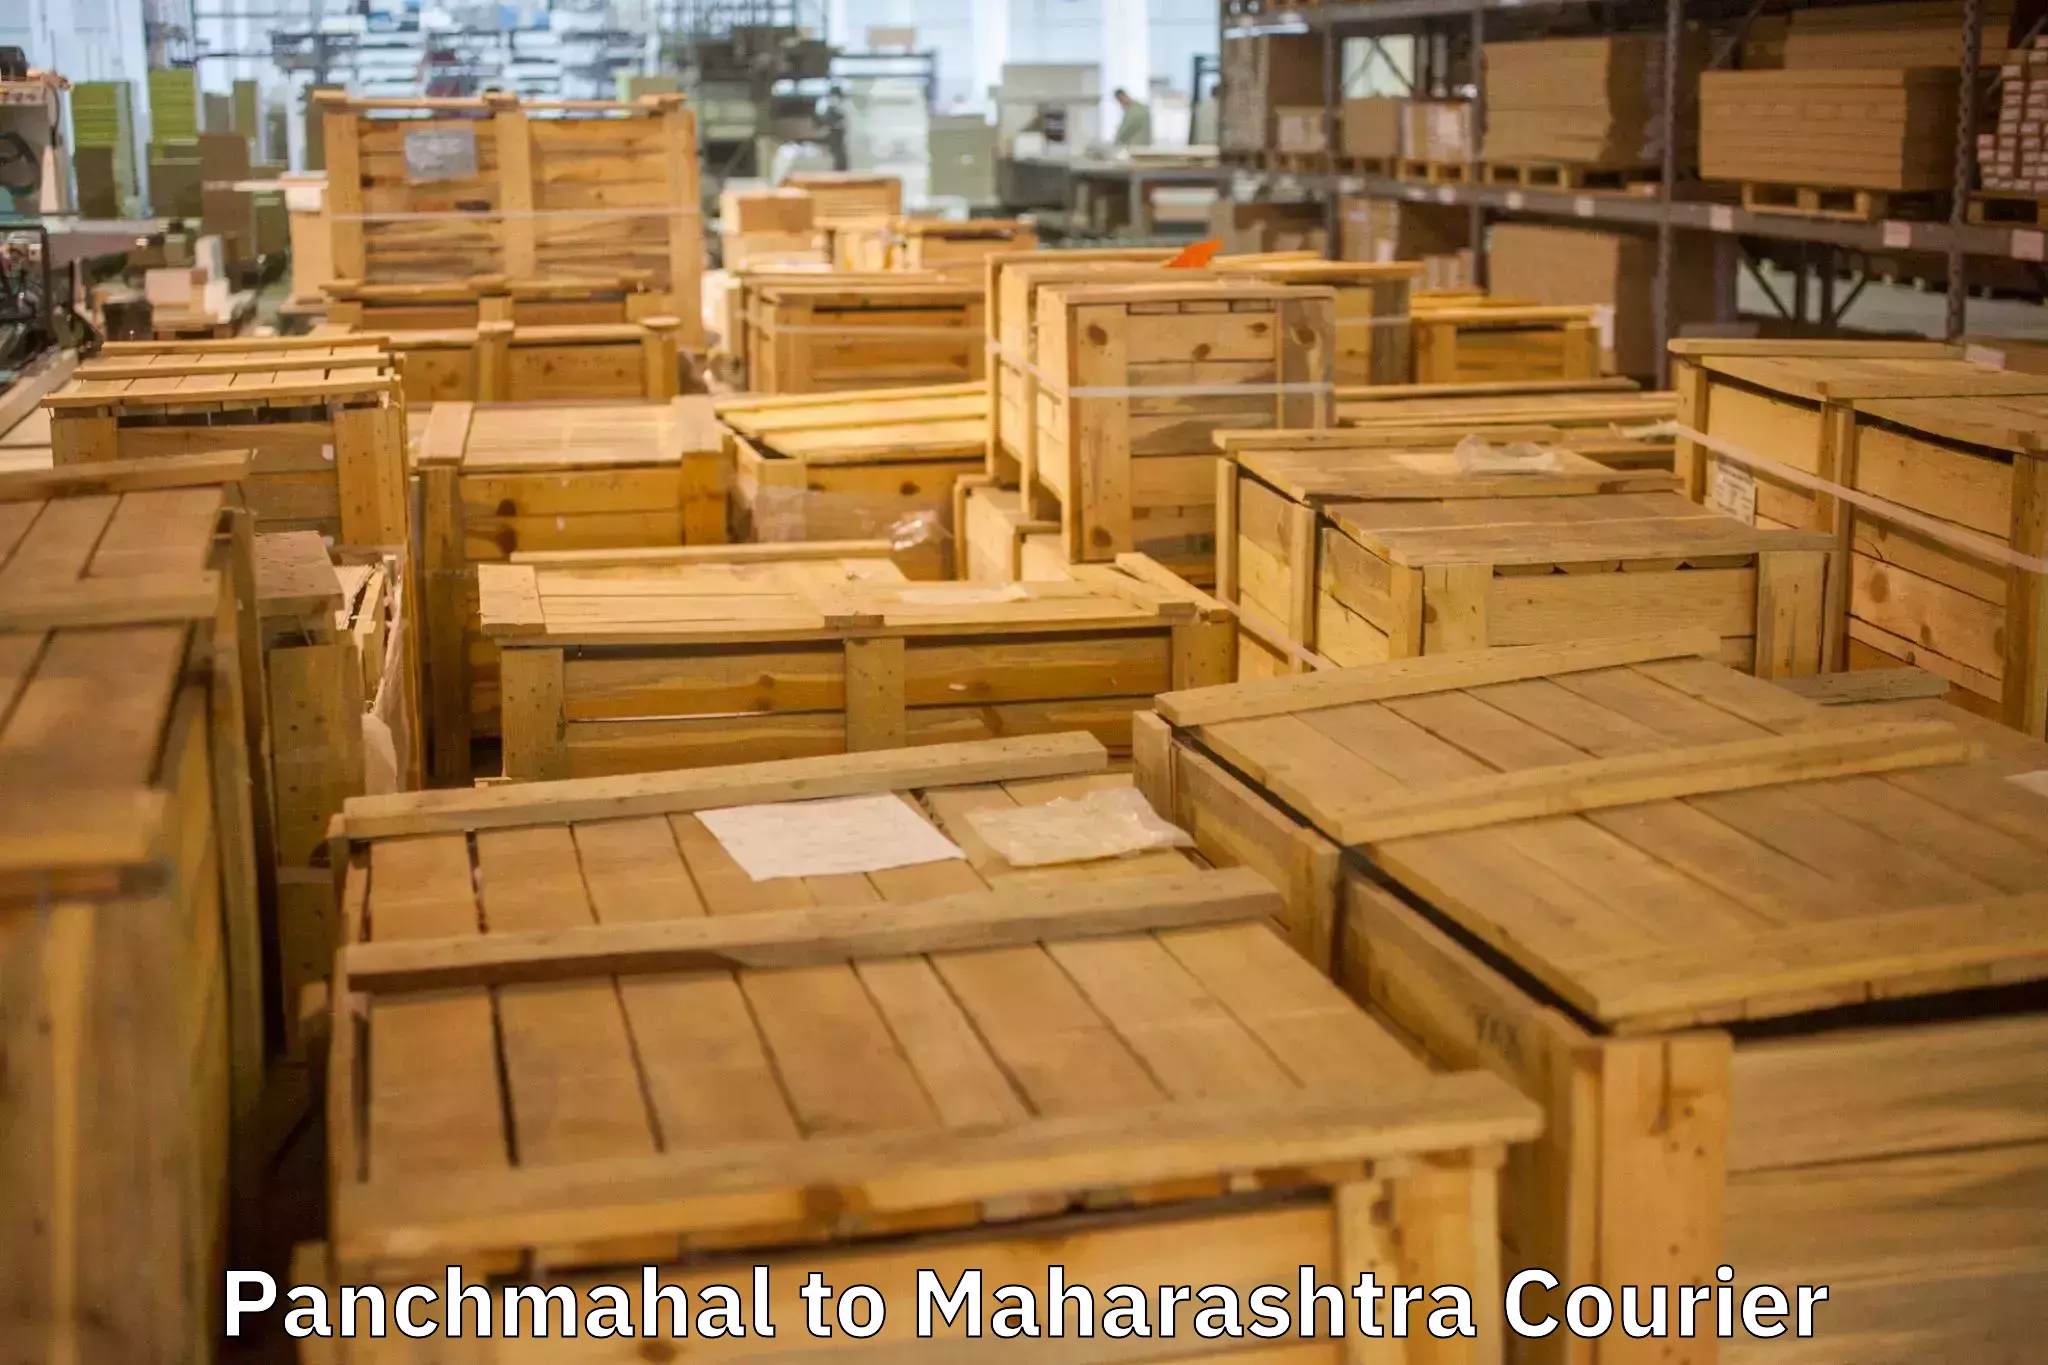 Home shifting experts Panchmahal to Maharashtra